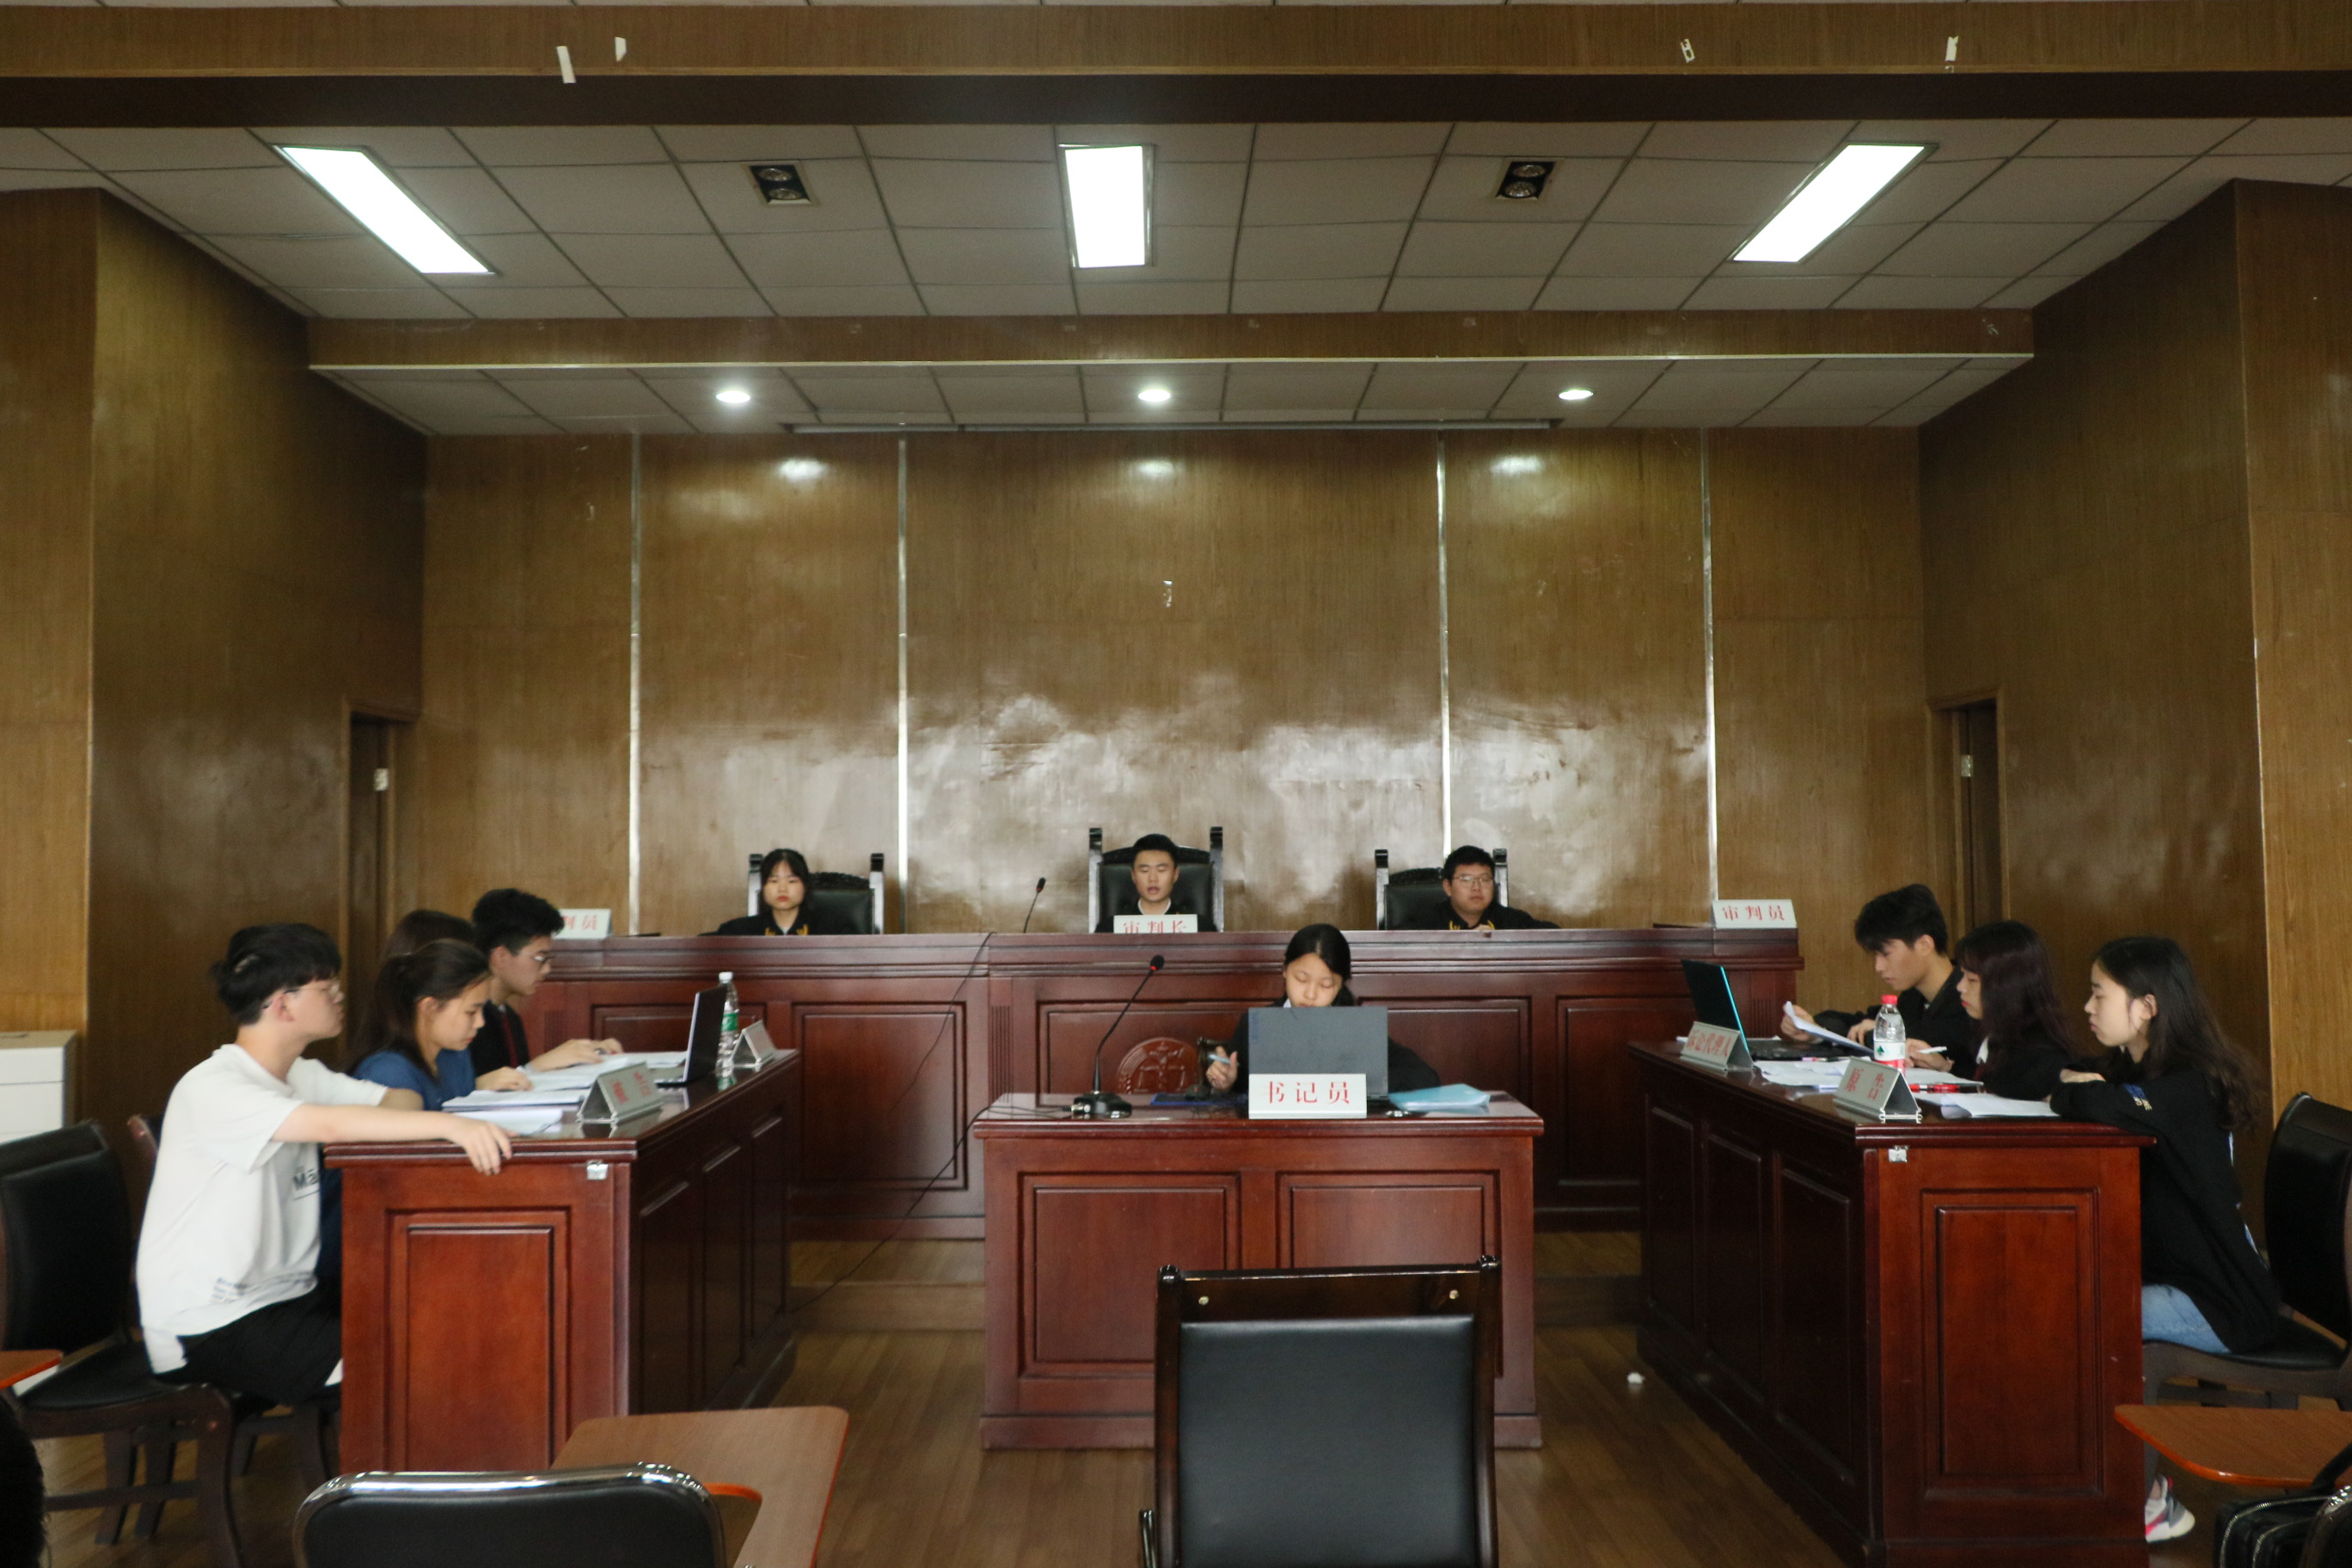 模拟法庭 - 江苏昊程昊律师事务所